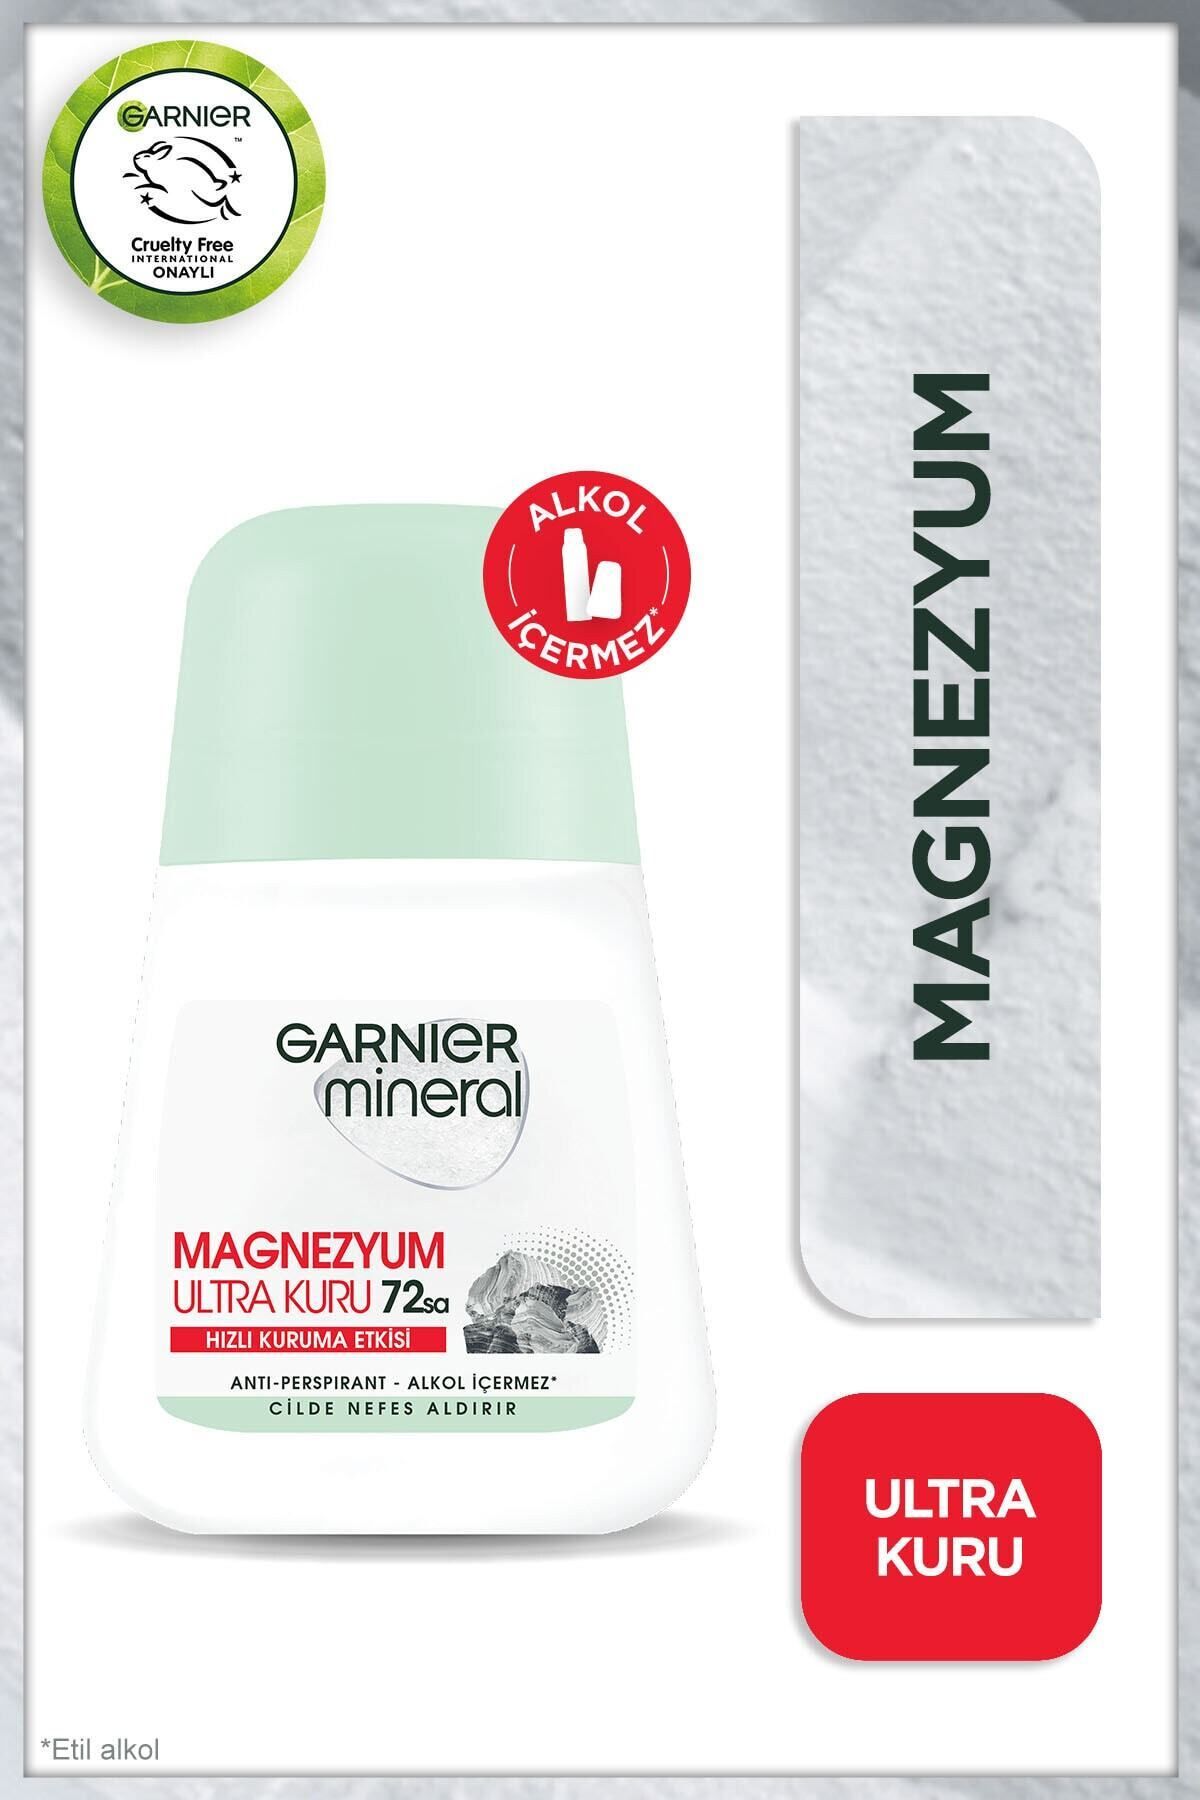 Garnier Mineral Magnezyum Ultra Kuru Roll-on Deodorant